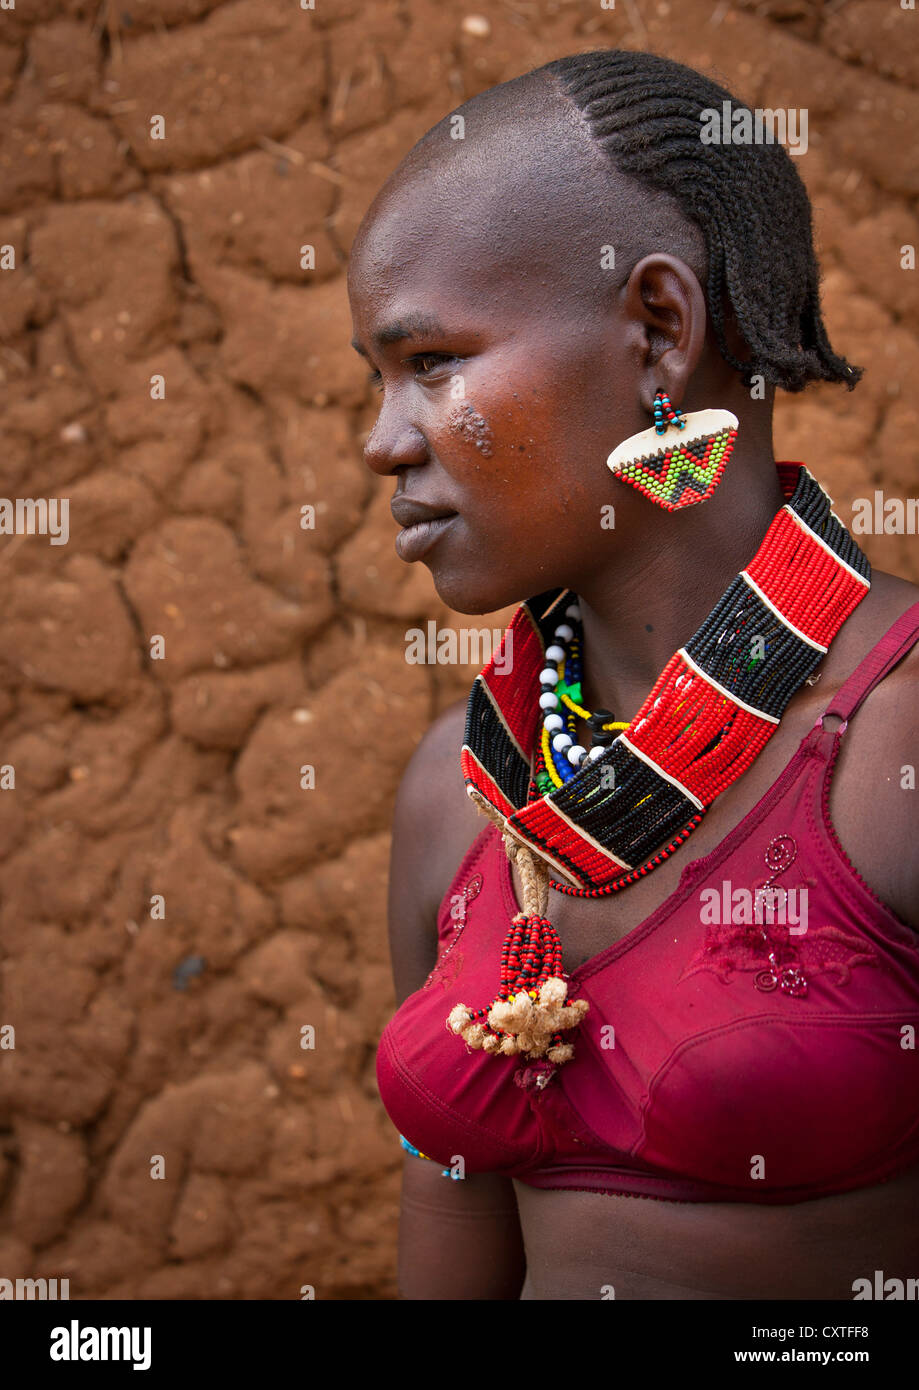 Hamar Tribe Girl With Colourful Necklaces, Turmi, Omo Valley, Ethiopia Stock Photo